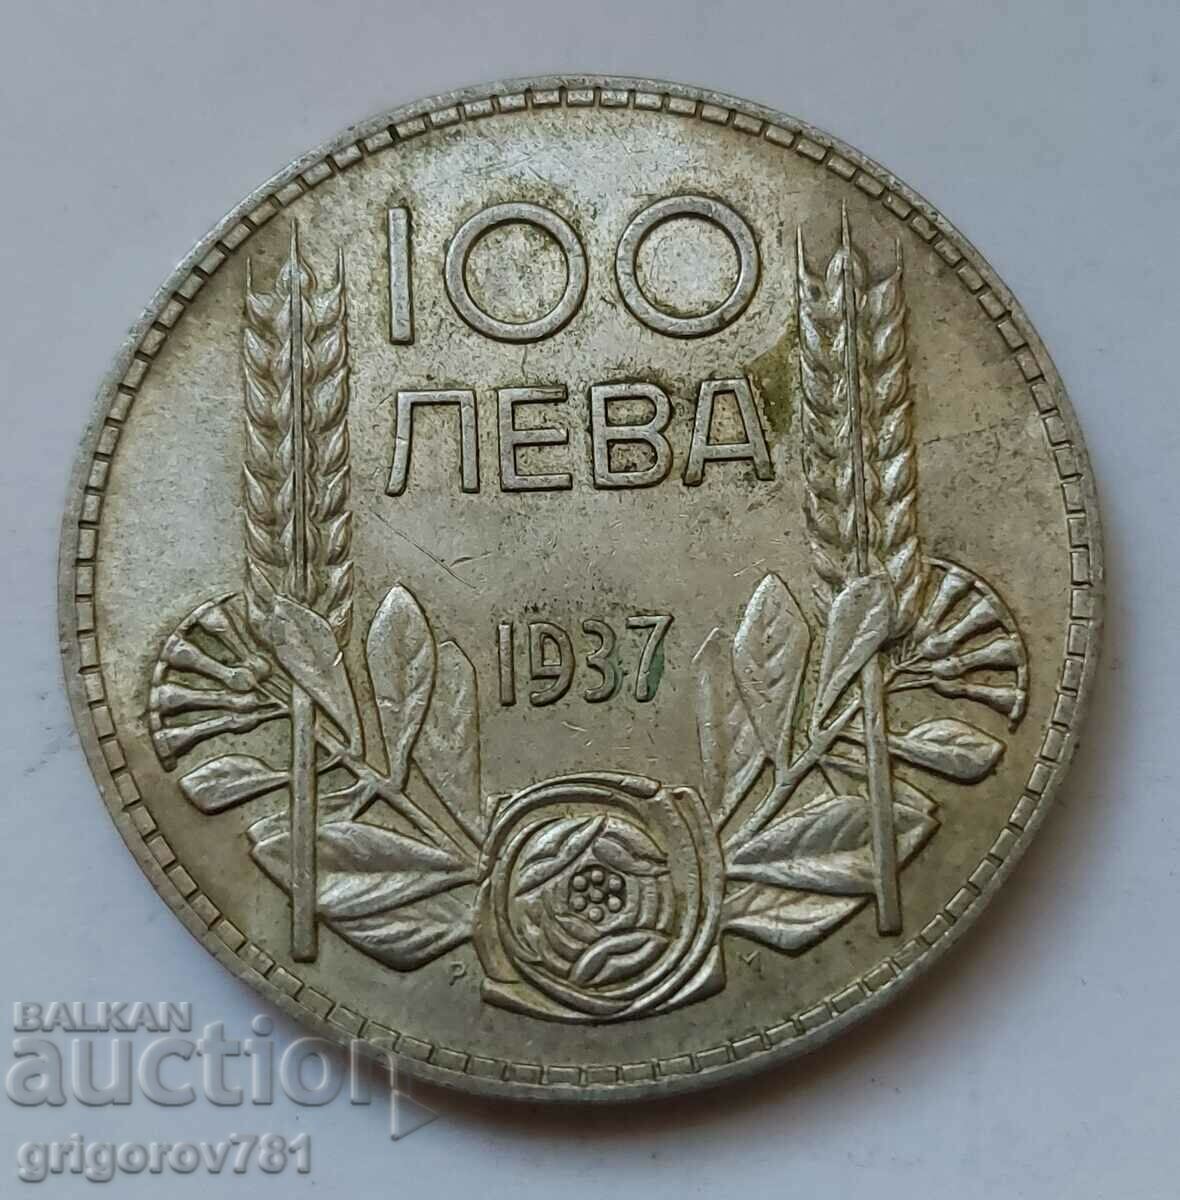 100 leva silver Bulgaria 1937 - silver coin #96